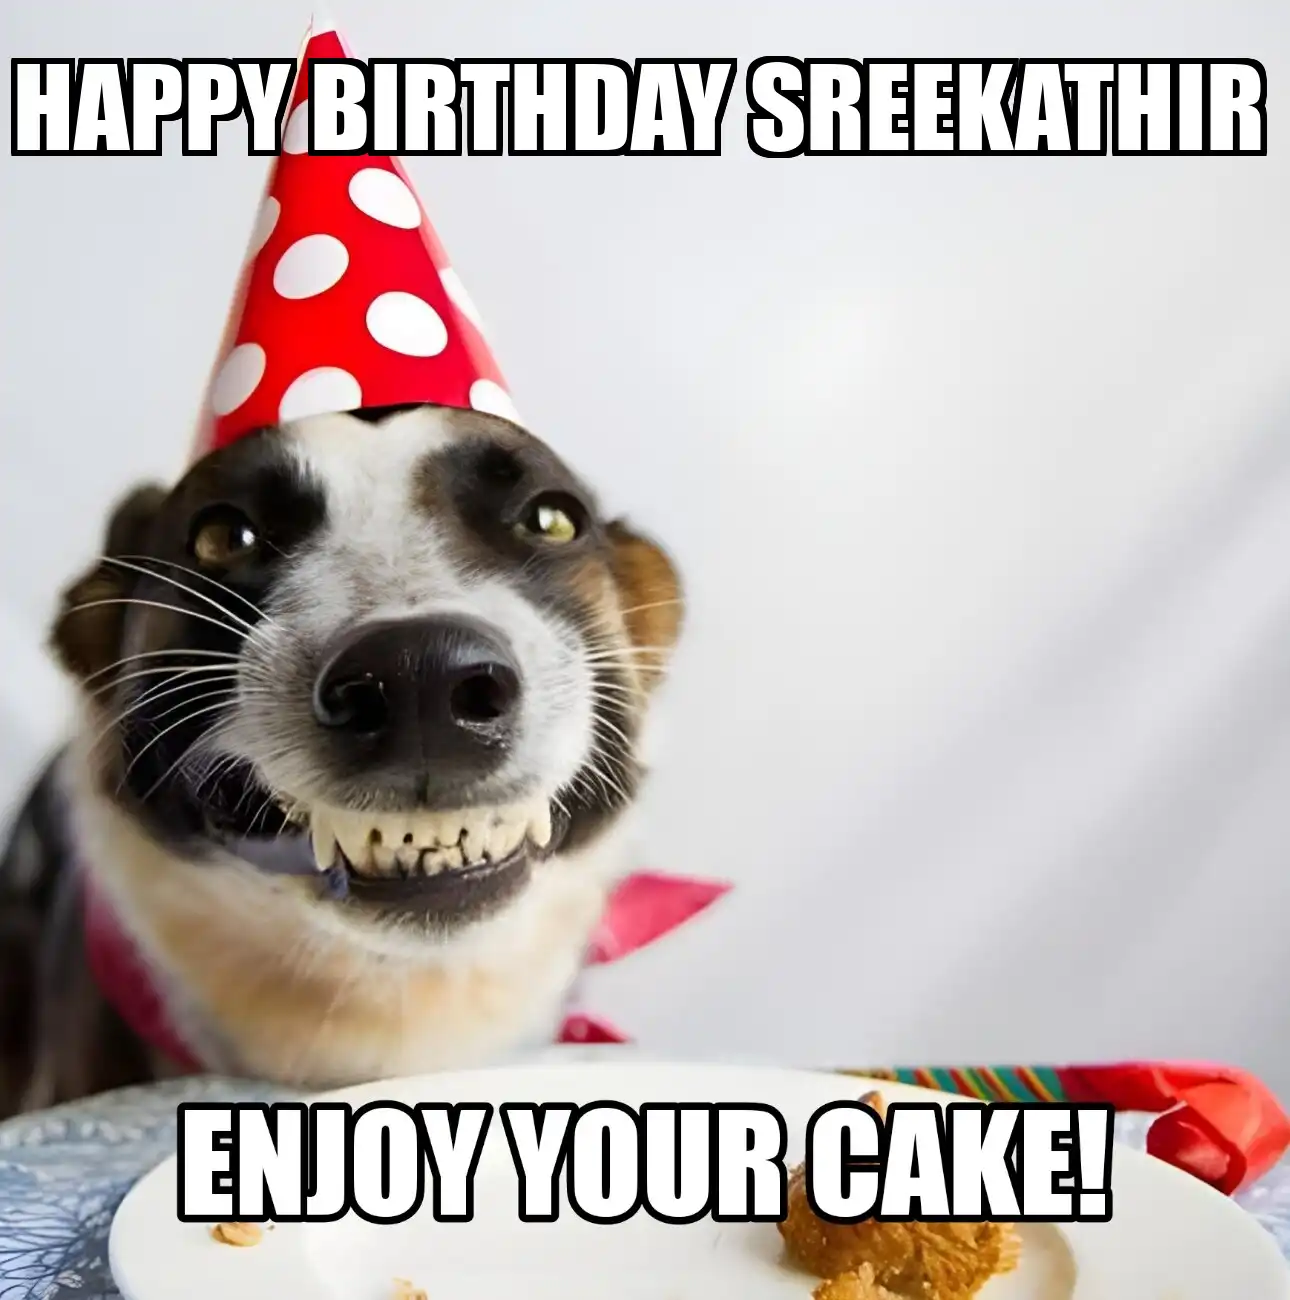 Happy Birthday Sreekathir Enjoy Your Cake Dog Meme